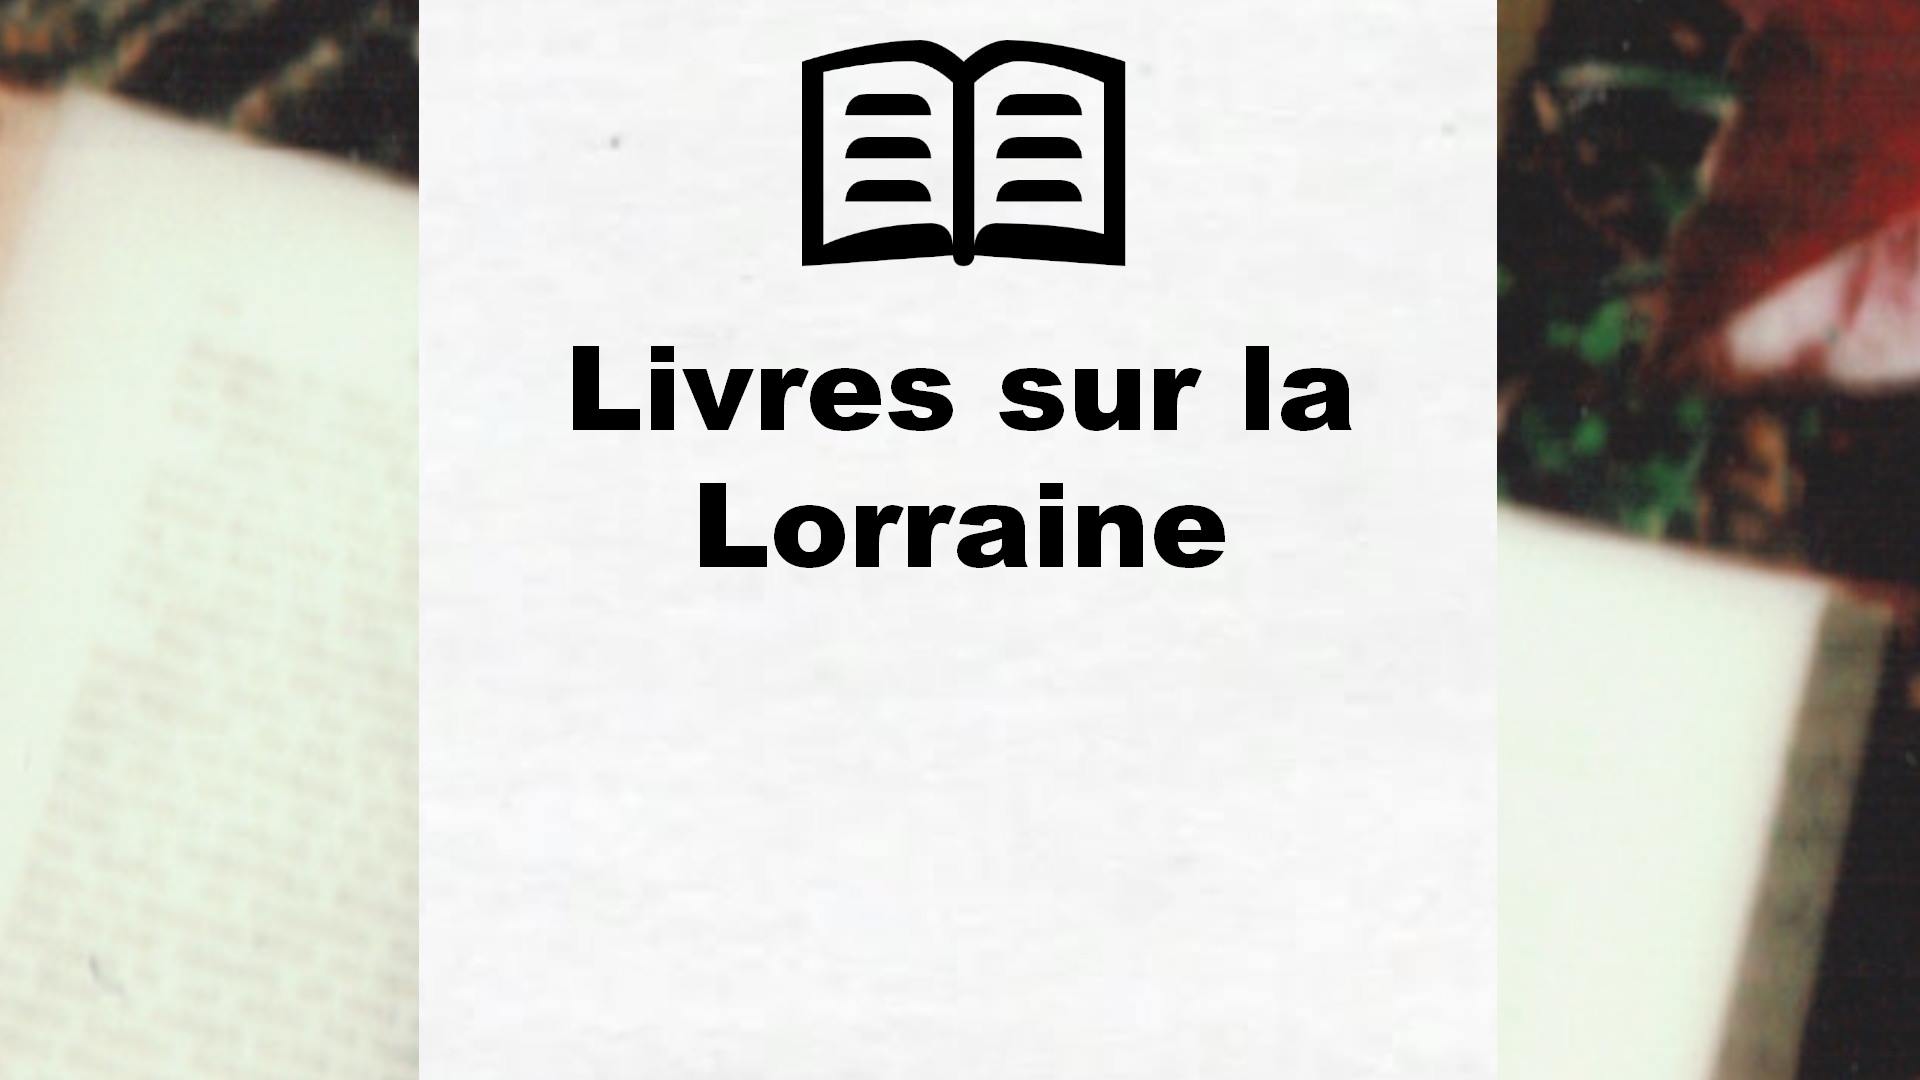 Livres sur la Lorraine